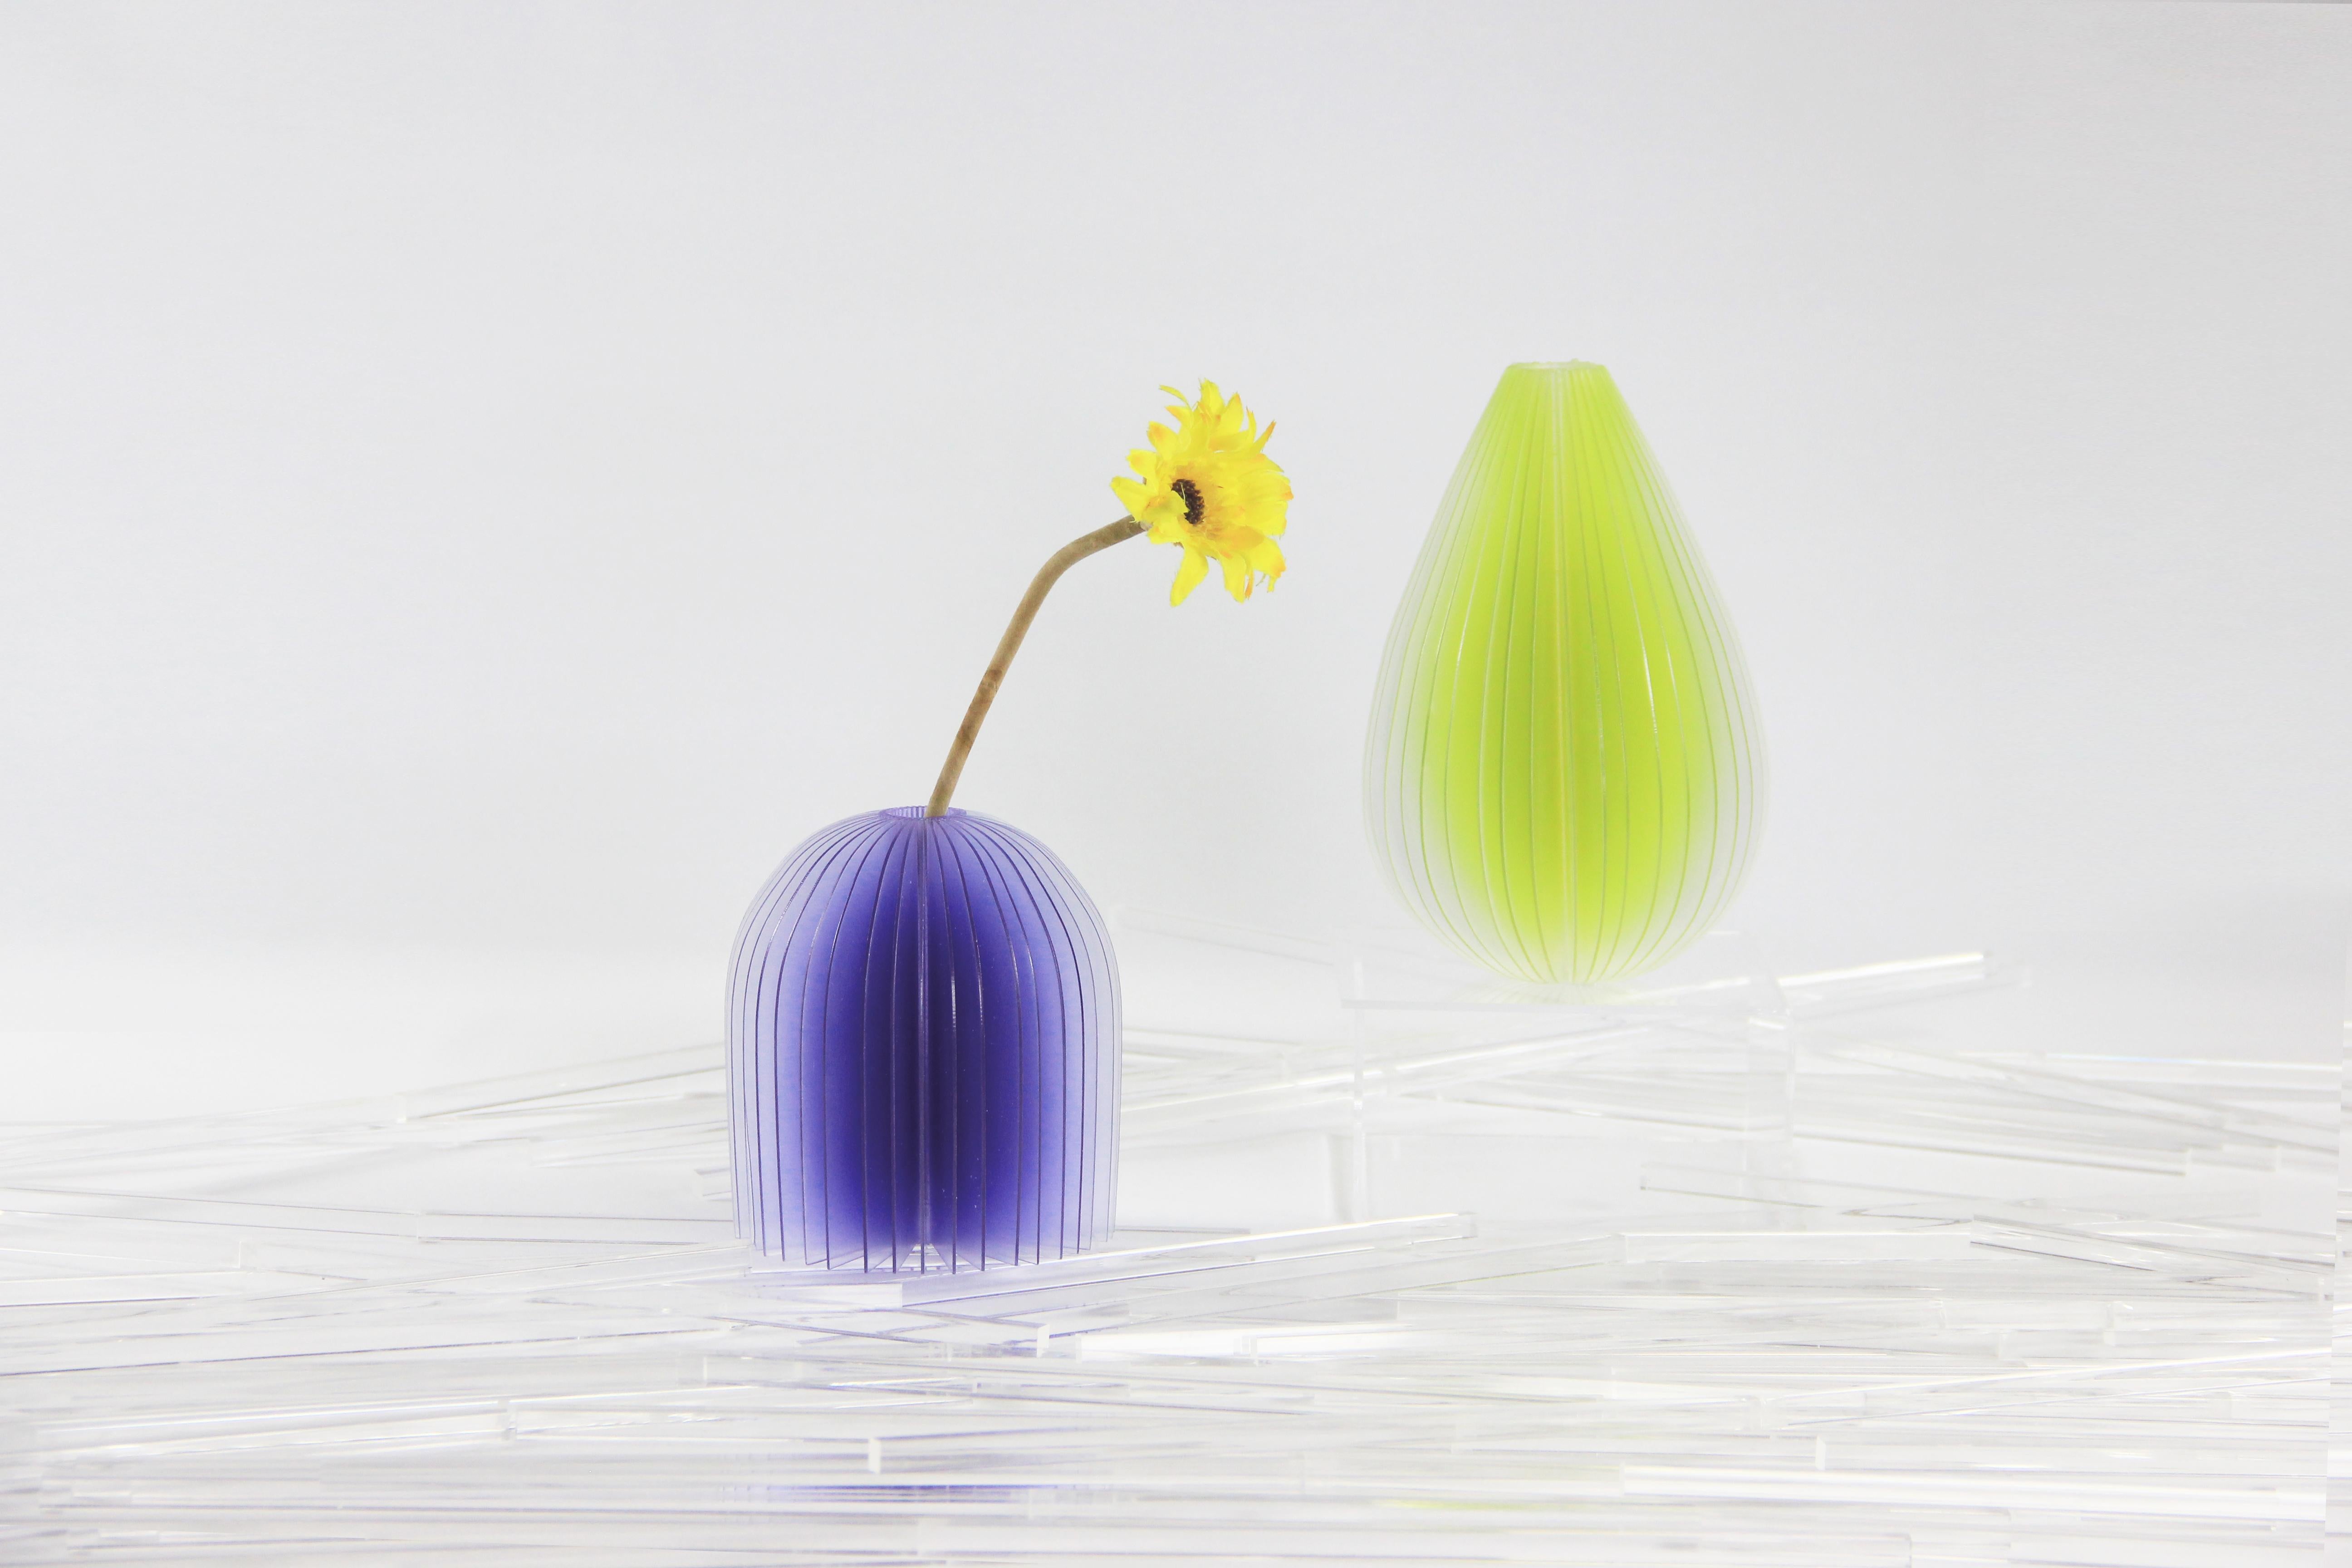 Die Vasen von Lightness sind von einer zufälligen Szene inspiriert. Wenn Licht in den geschichteten Raum projiziert wird, beginnt die wunderbare Phantasie. Die Vasen weisen Farbabstufungen auf, die sich je nach Lichteinfall optisch verändern, als ob